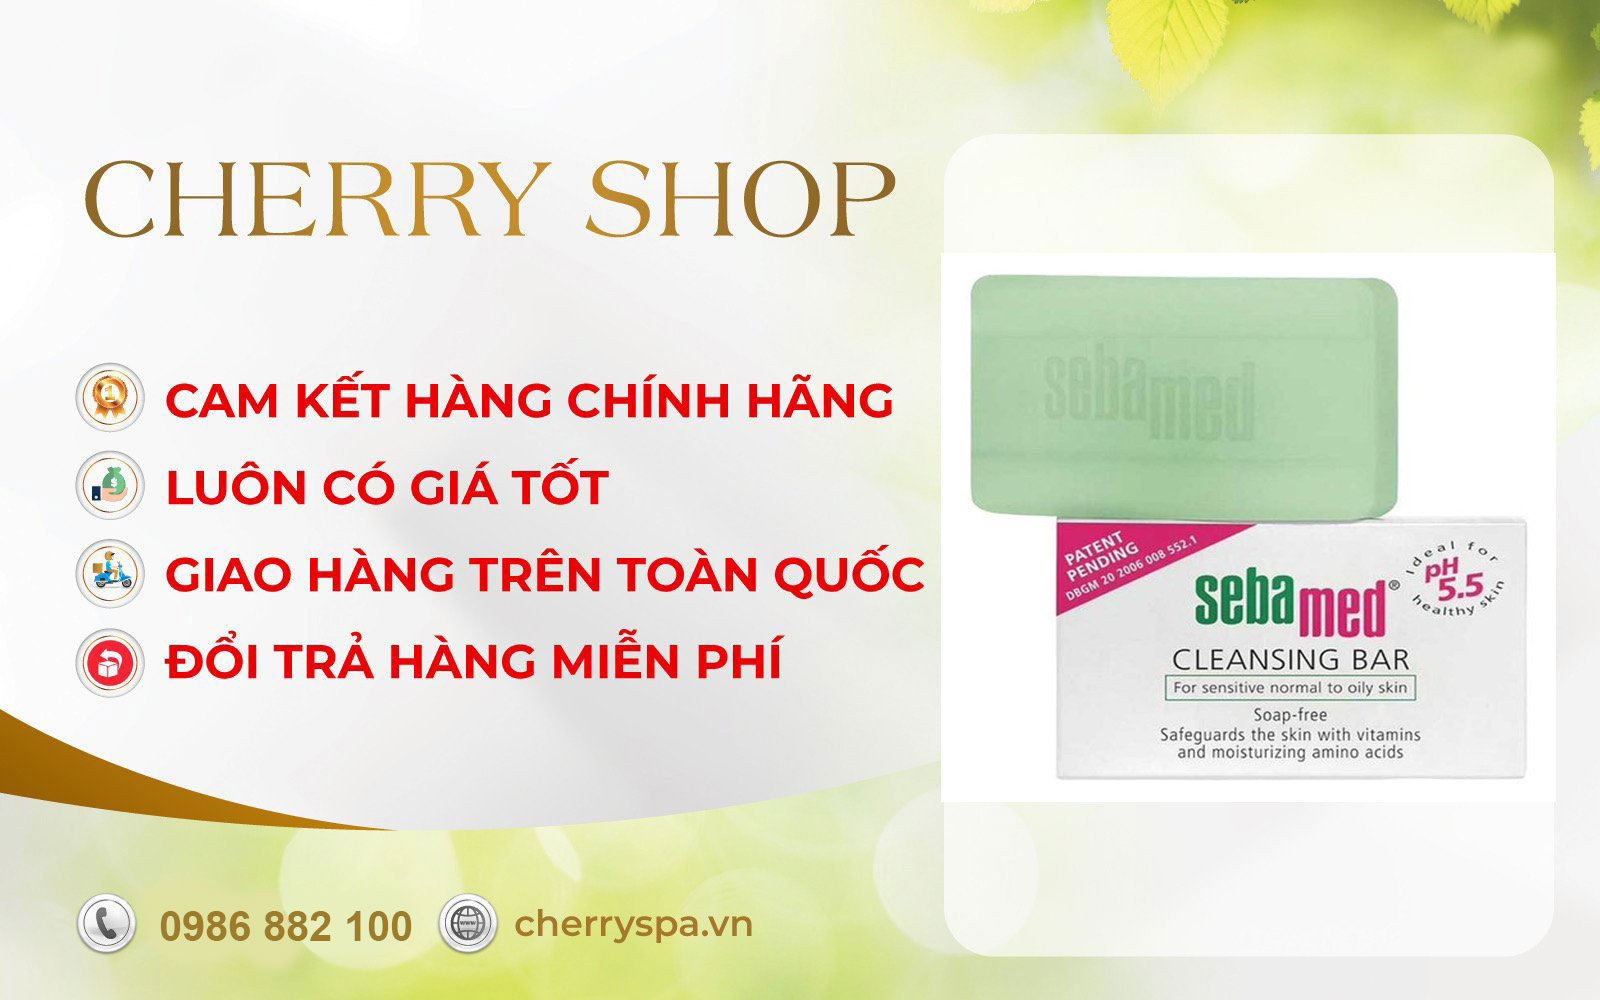 cherry spa đổi trả hàng Sebamed pH5.5